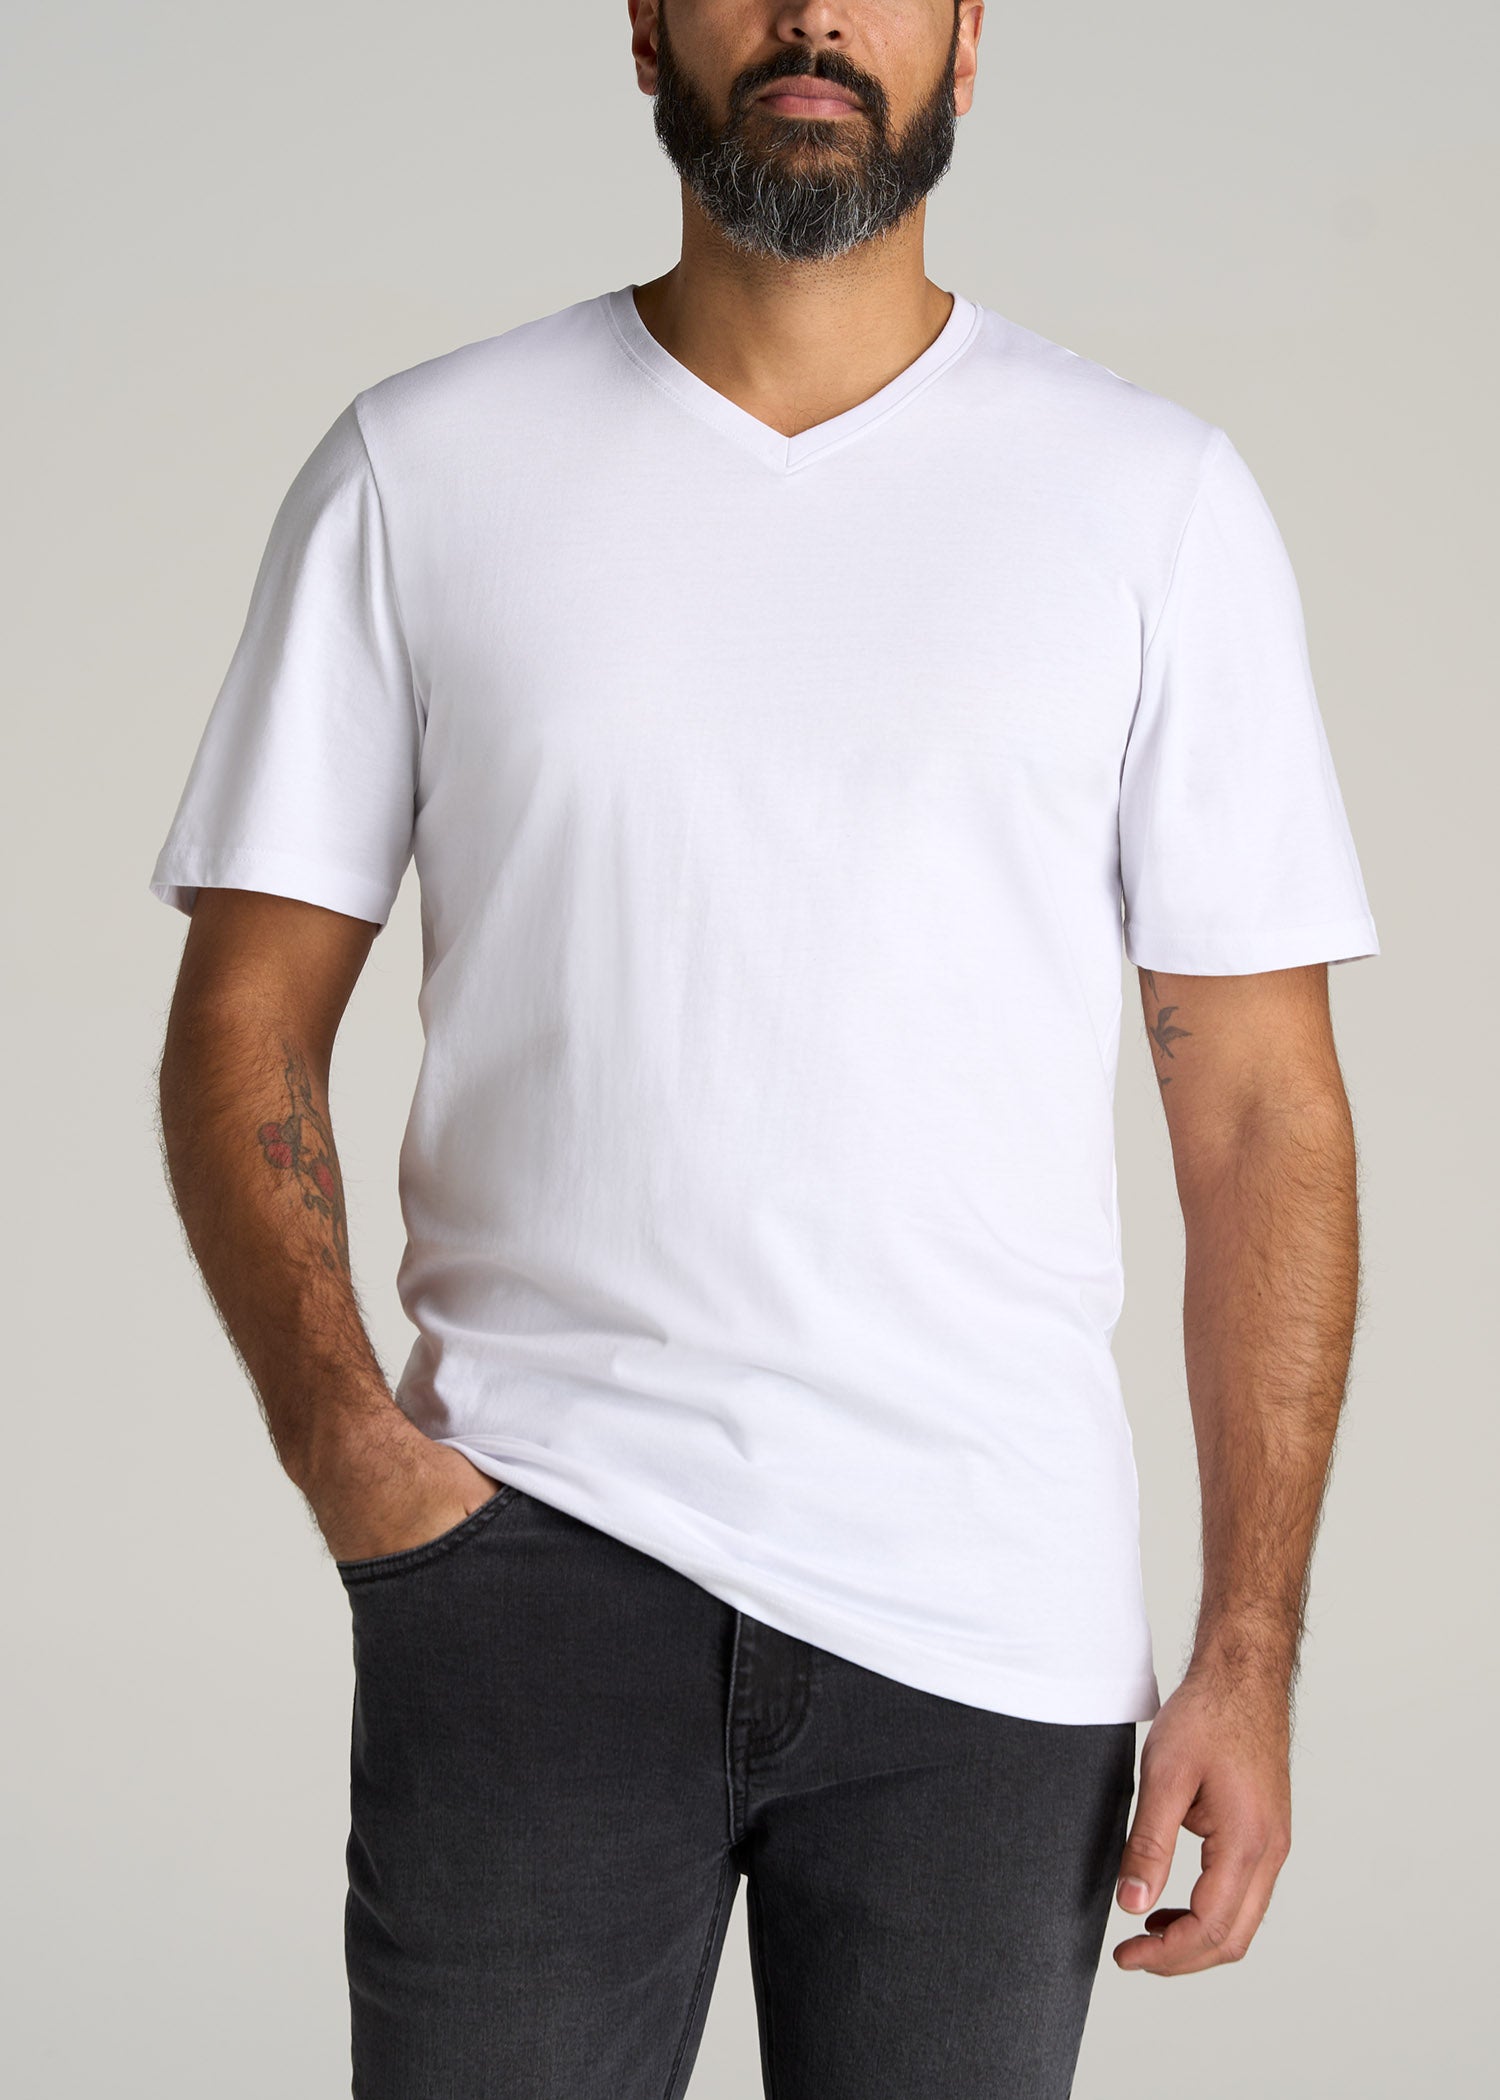 Classic Fit V-Neck Cotton T-Shirt